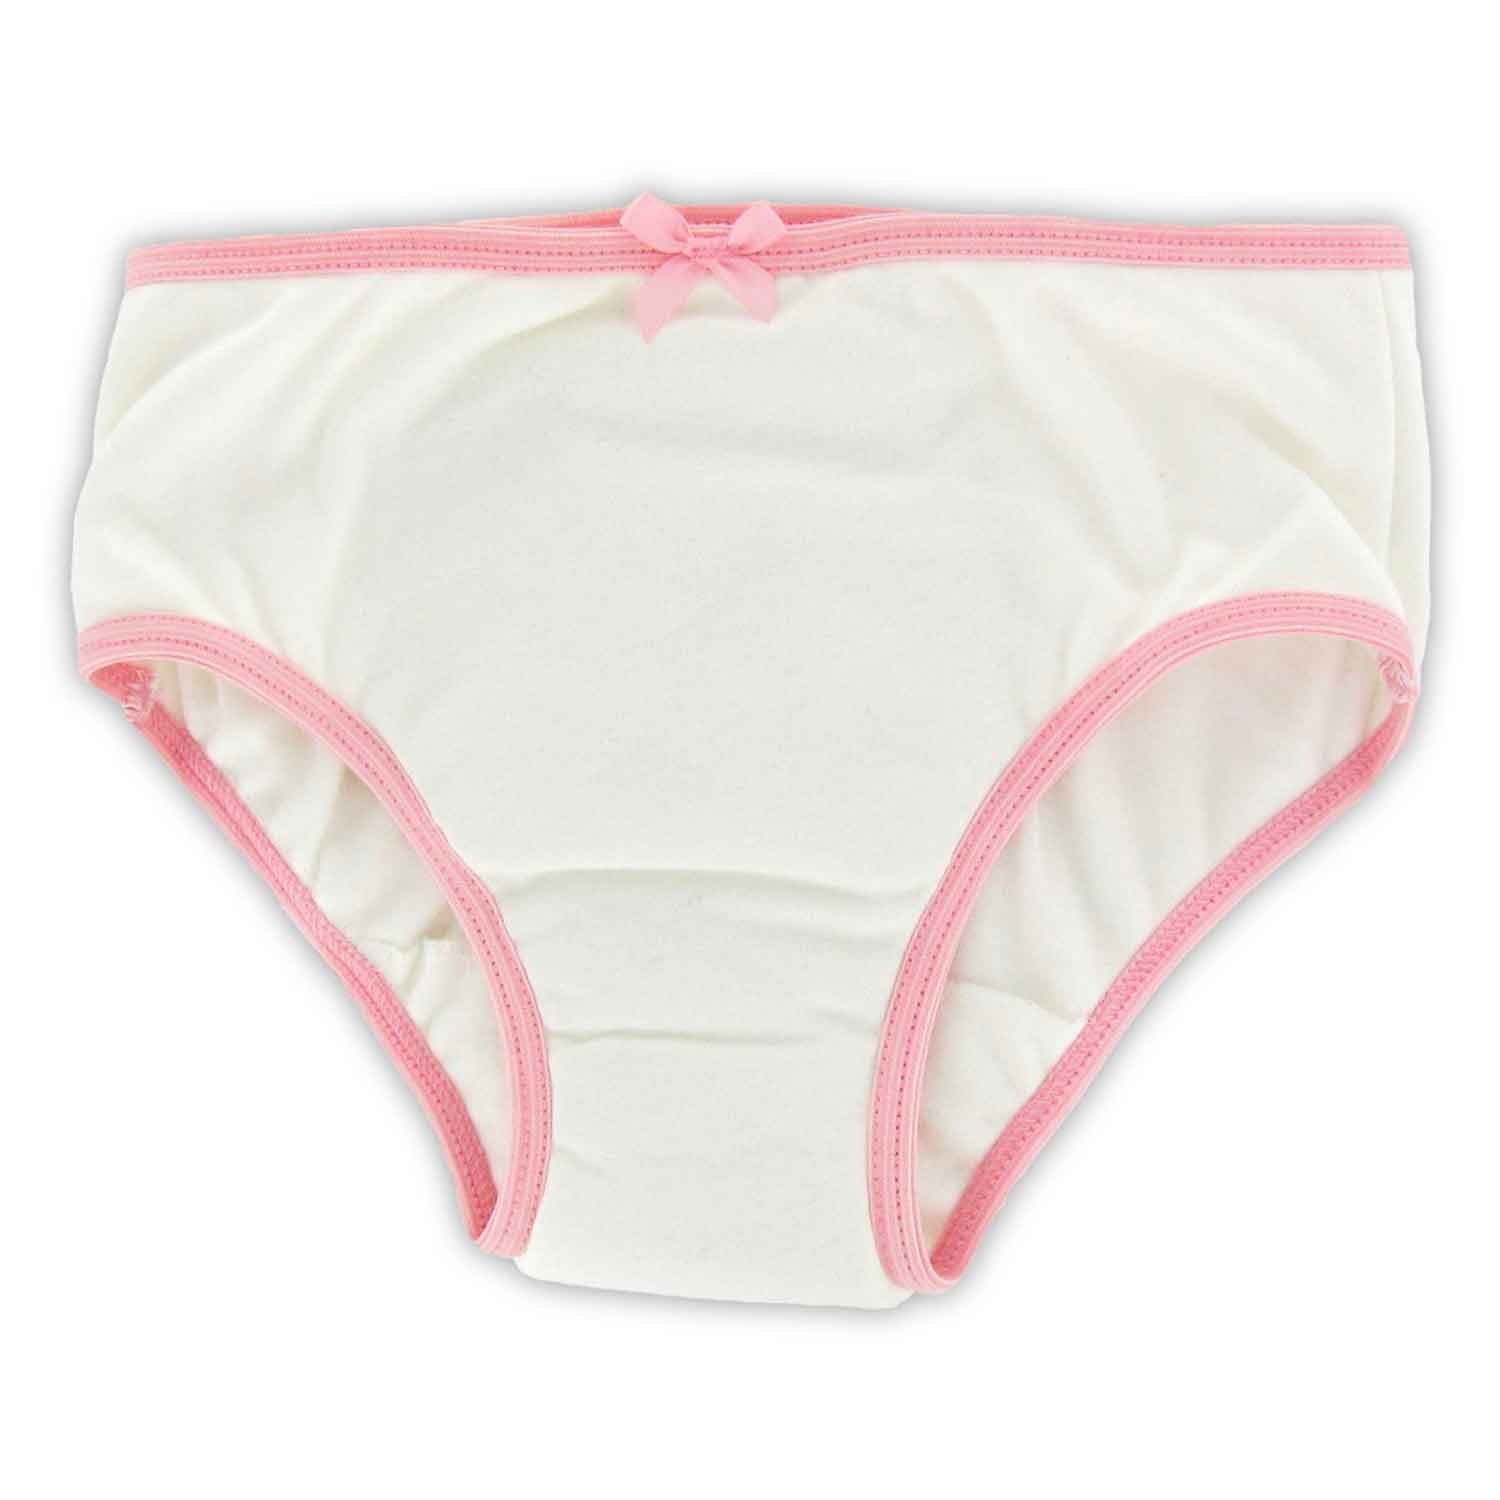 Attends Underwear Super Plus: Bedwetting Store